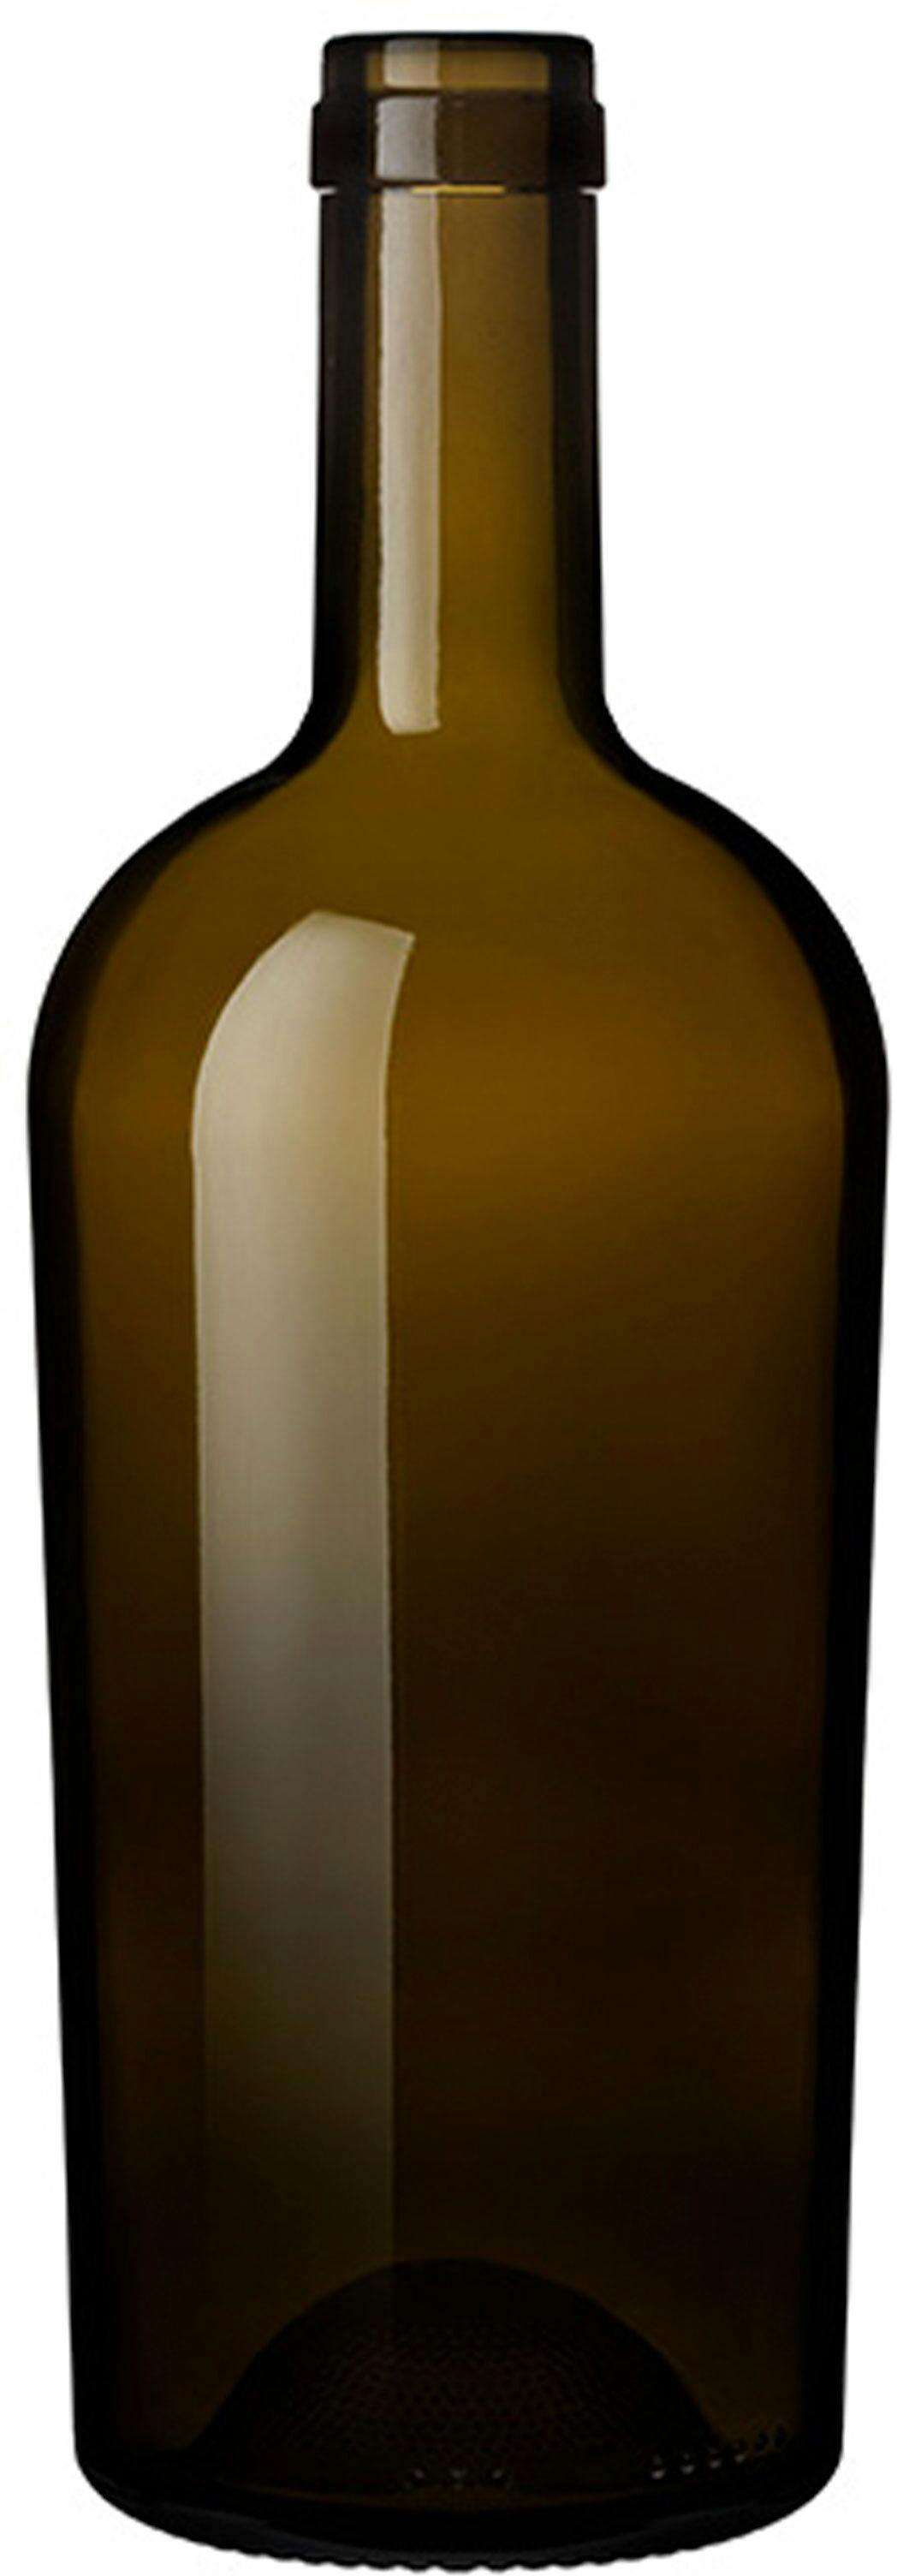 Flasche REGINE  WINE CLUB 750 ml BG-Korken